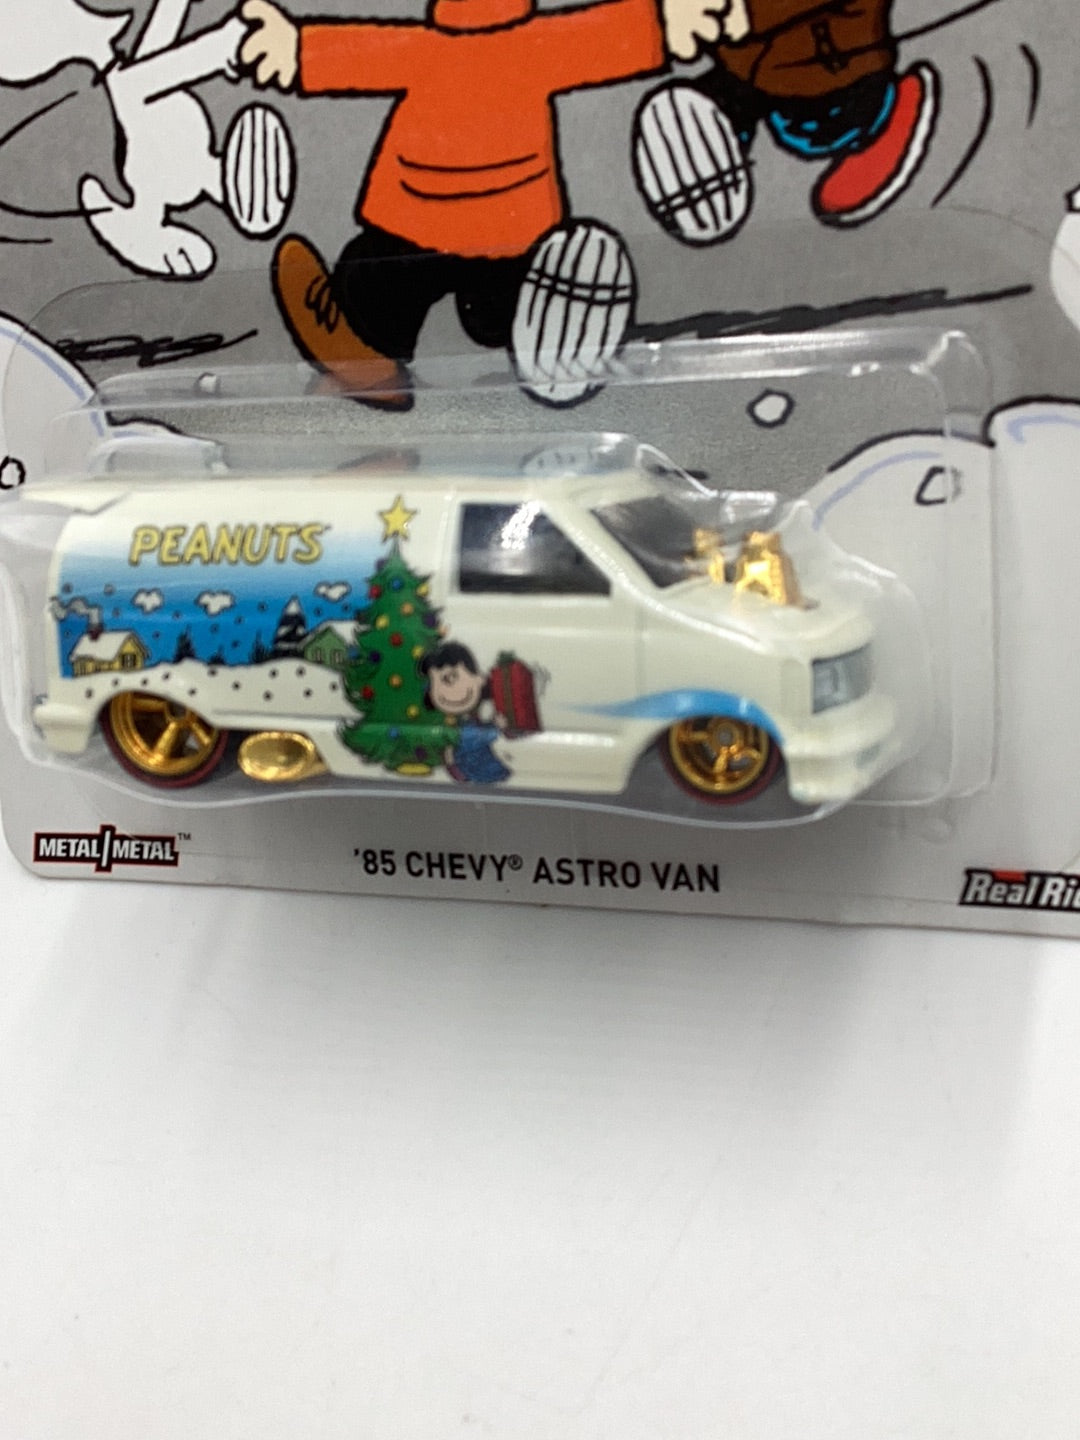 Hot wheels Peanuts 1985 Chevy Astro Van